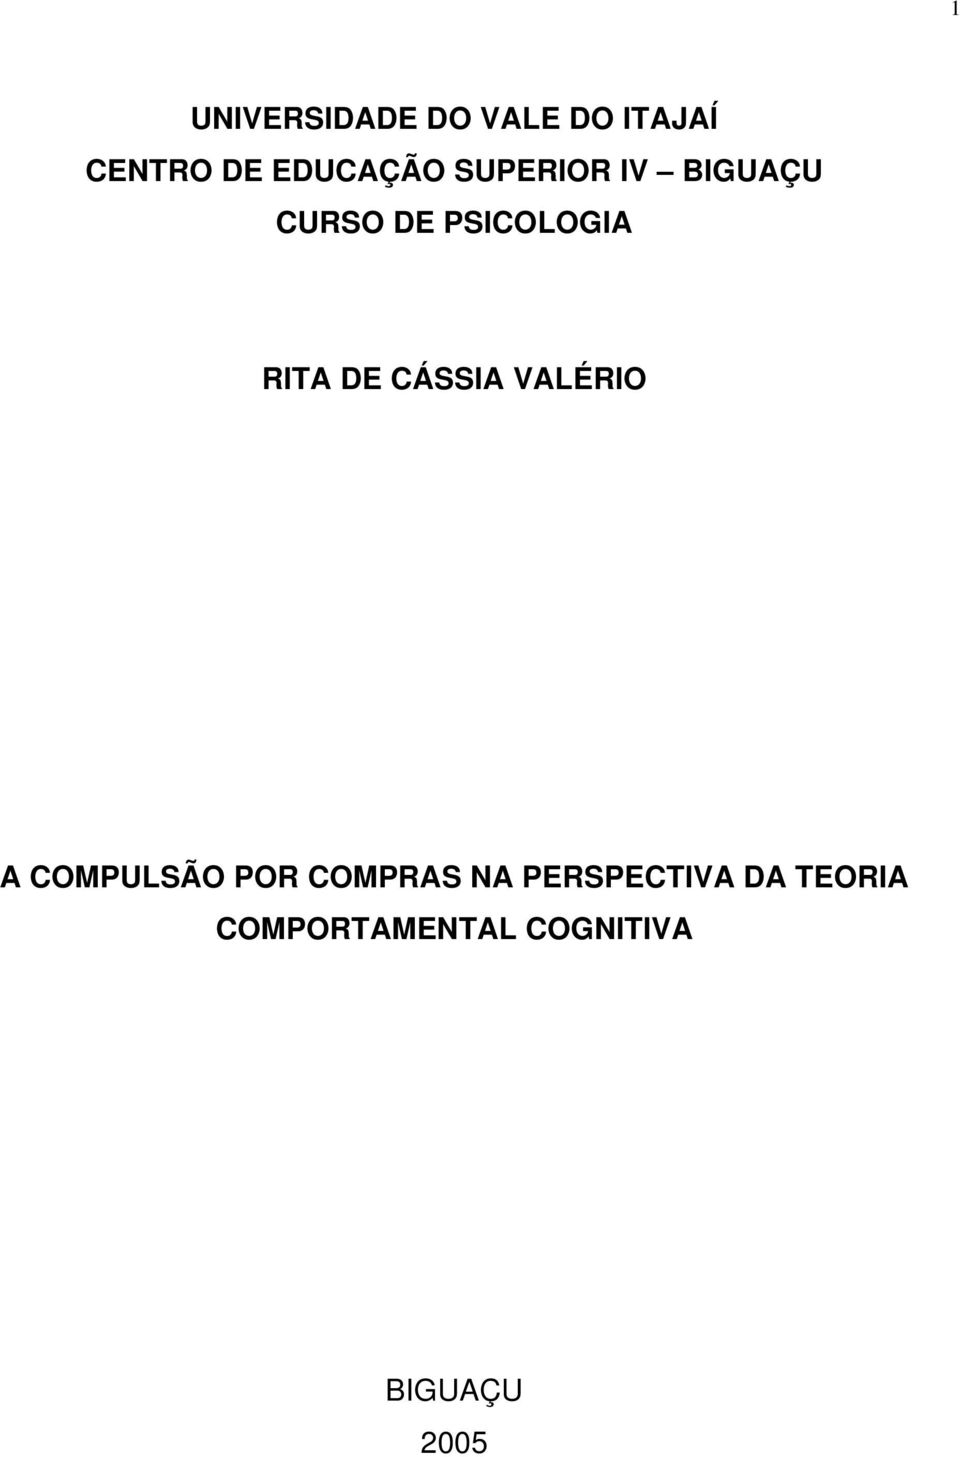 RITA DE CÁSSIA VALÉRIO A COMPULSÃO POR COMPRAS NA